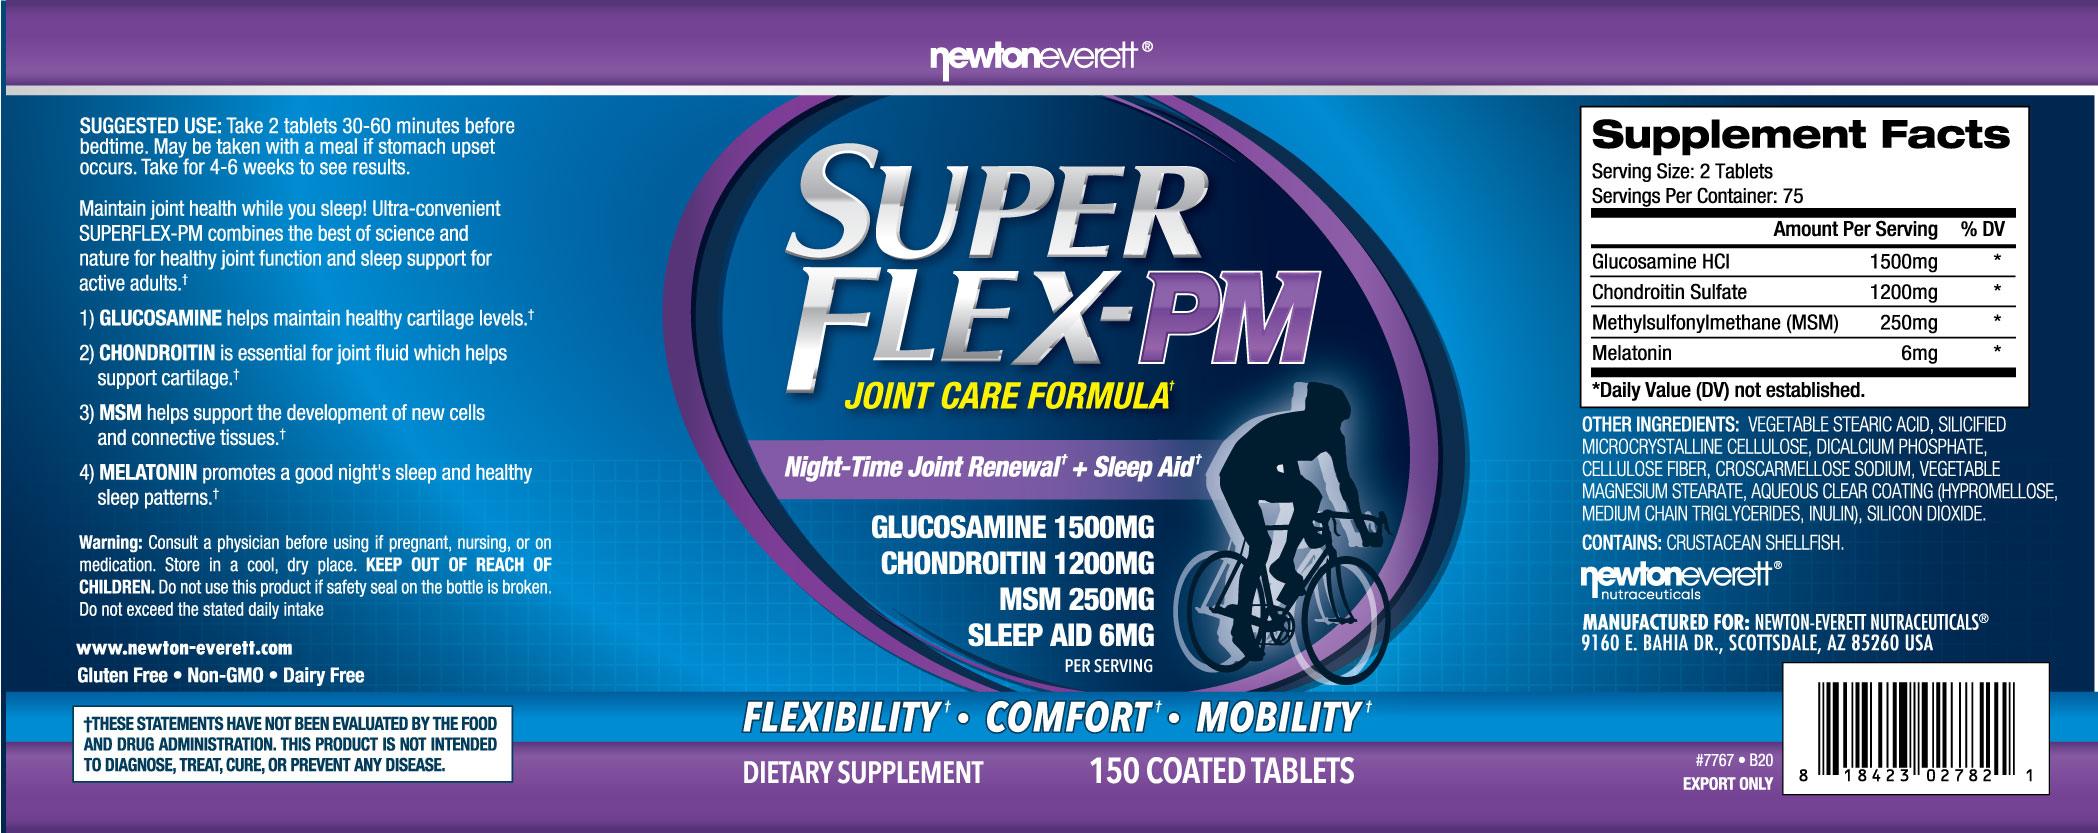 SUPERFLEX-PM | Formule de Soin des Articulations + Aide-Sommeil - mondialpharma.com